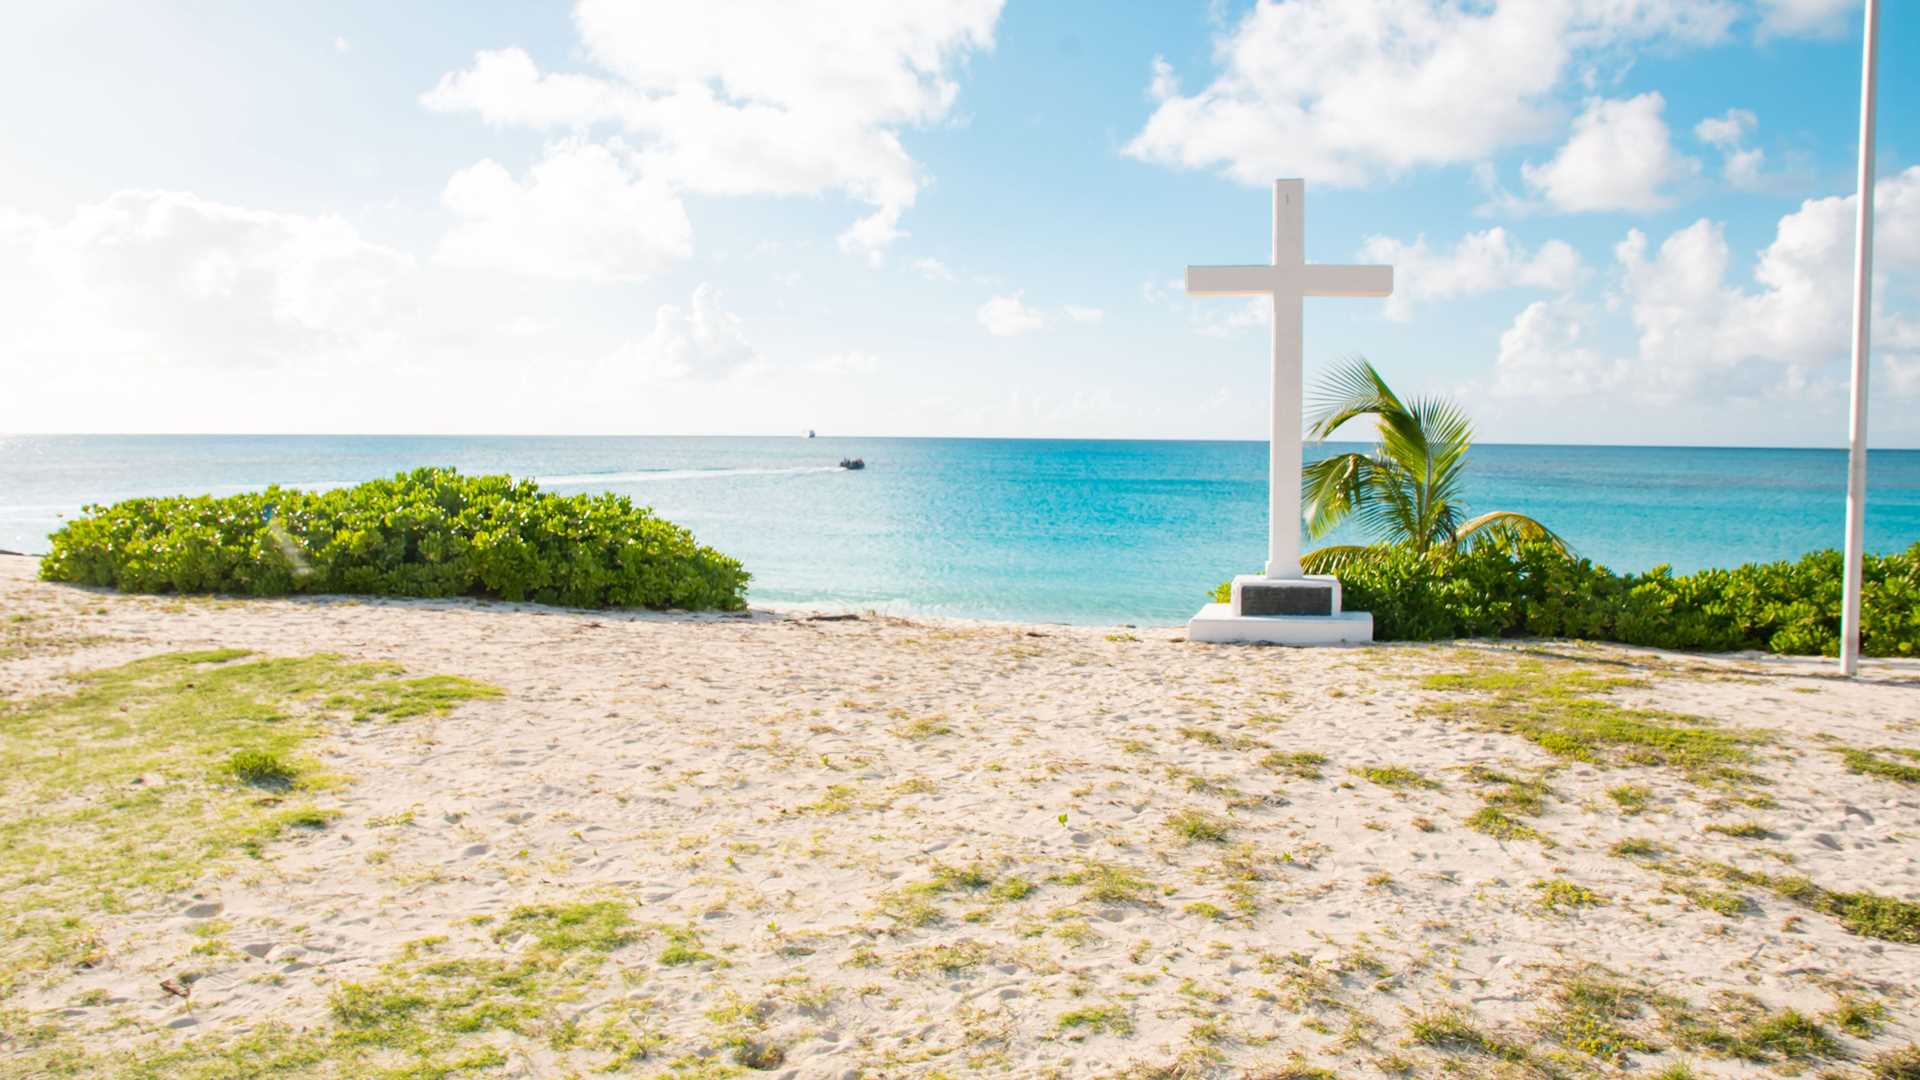 San Salvador, Bahamas